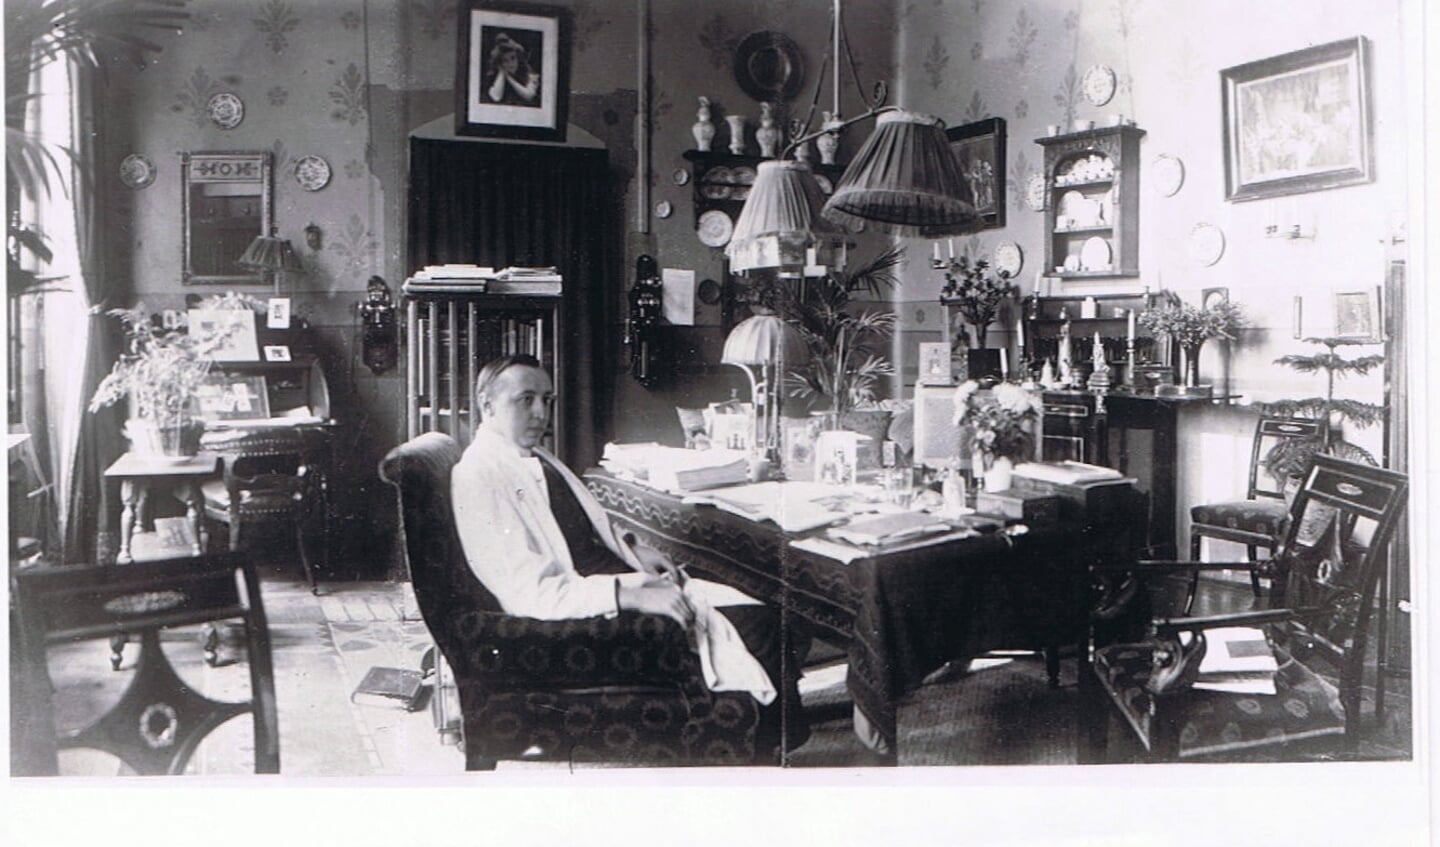  Sprreekkamer van dokter Bijnen rond 1910. 